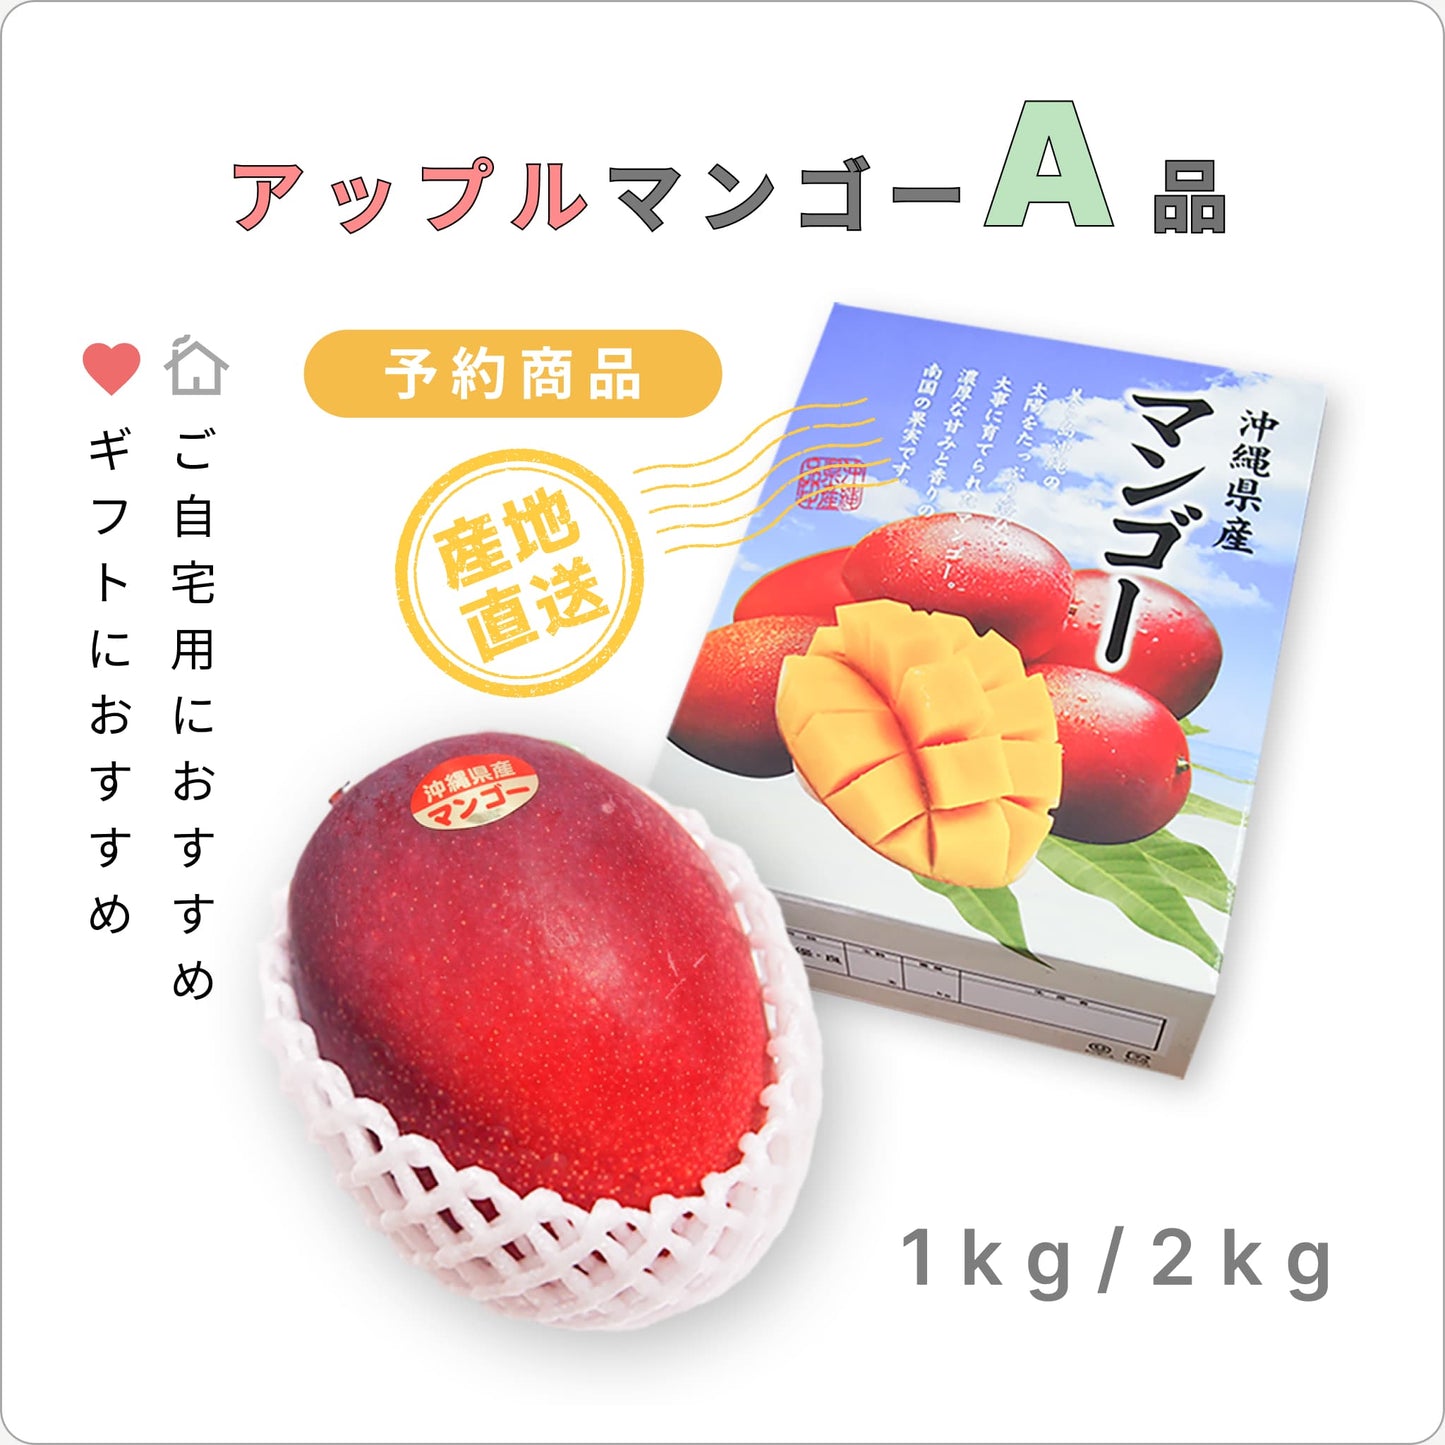 『予約商品』 南の果実園のアップルマンゴー 【A品】